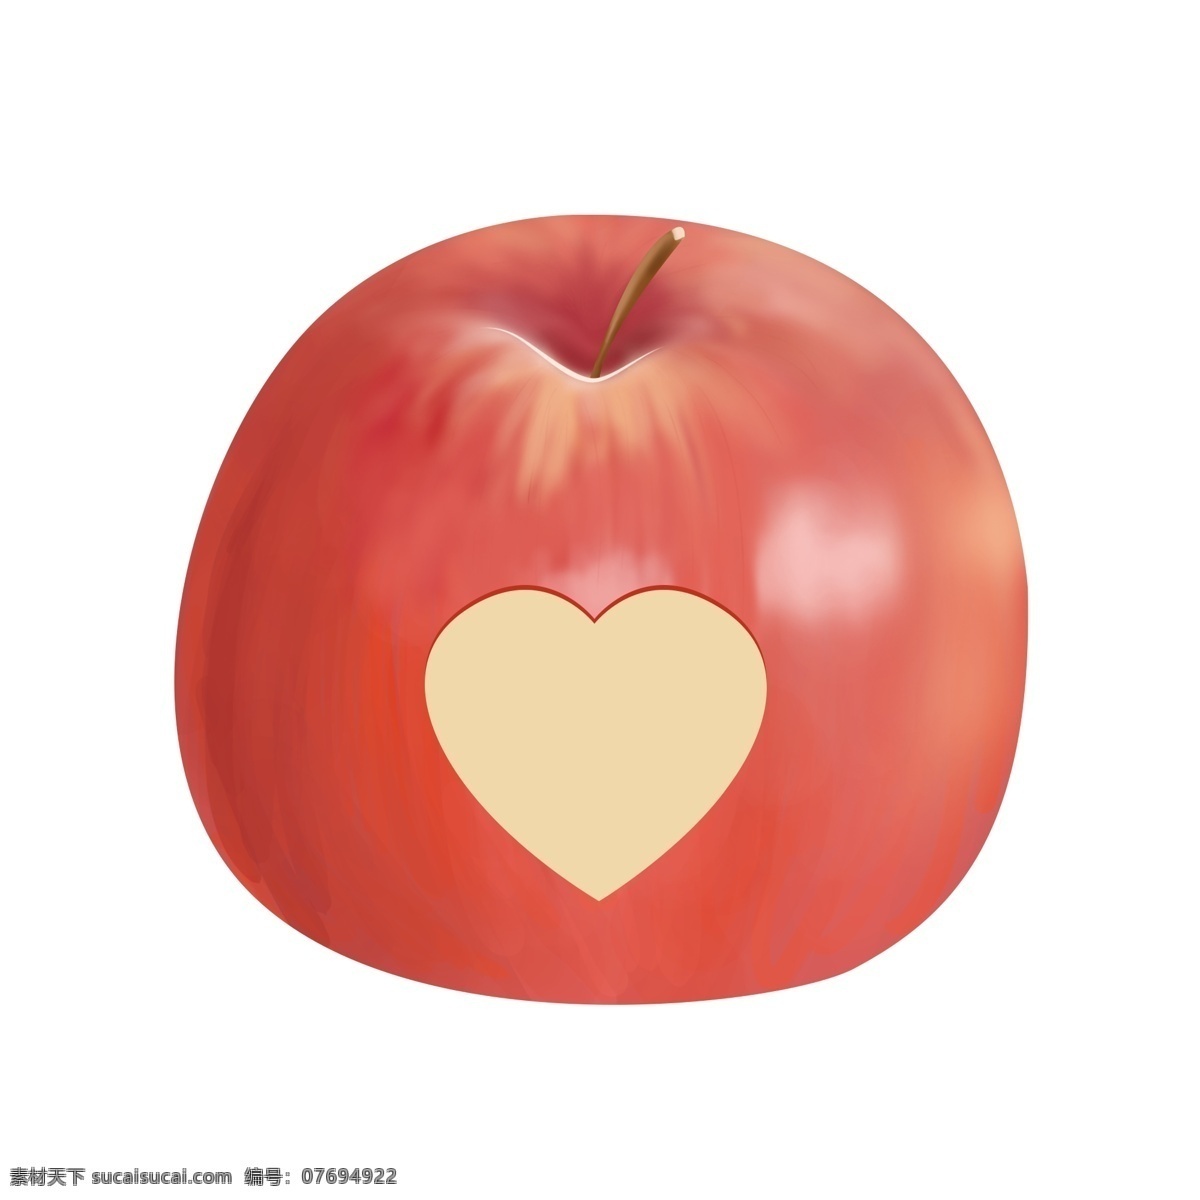 平安夜 苹果 爱心 果肉 形状 装饰 图案 圣诞节 红色 可爱 清新 插画 水果 设计元素 礼物 手绘